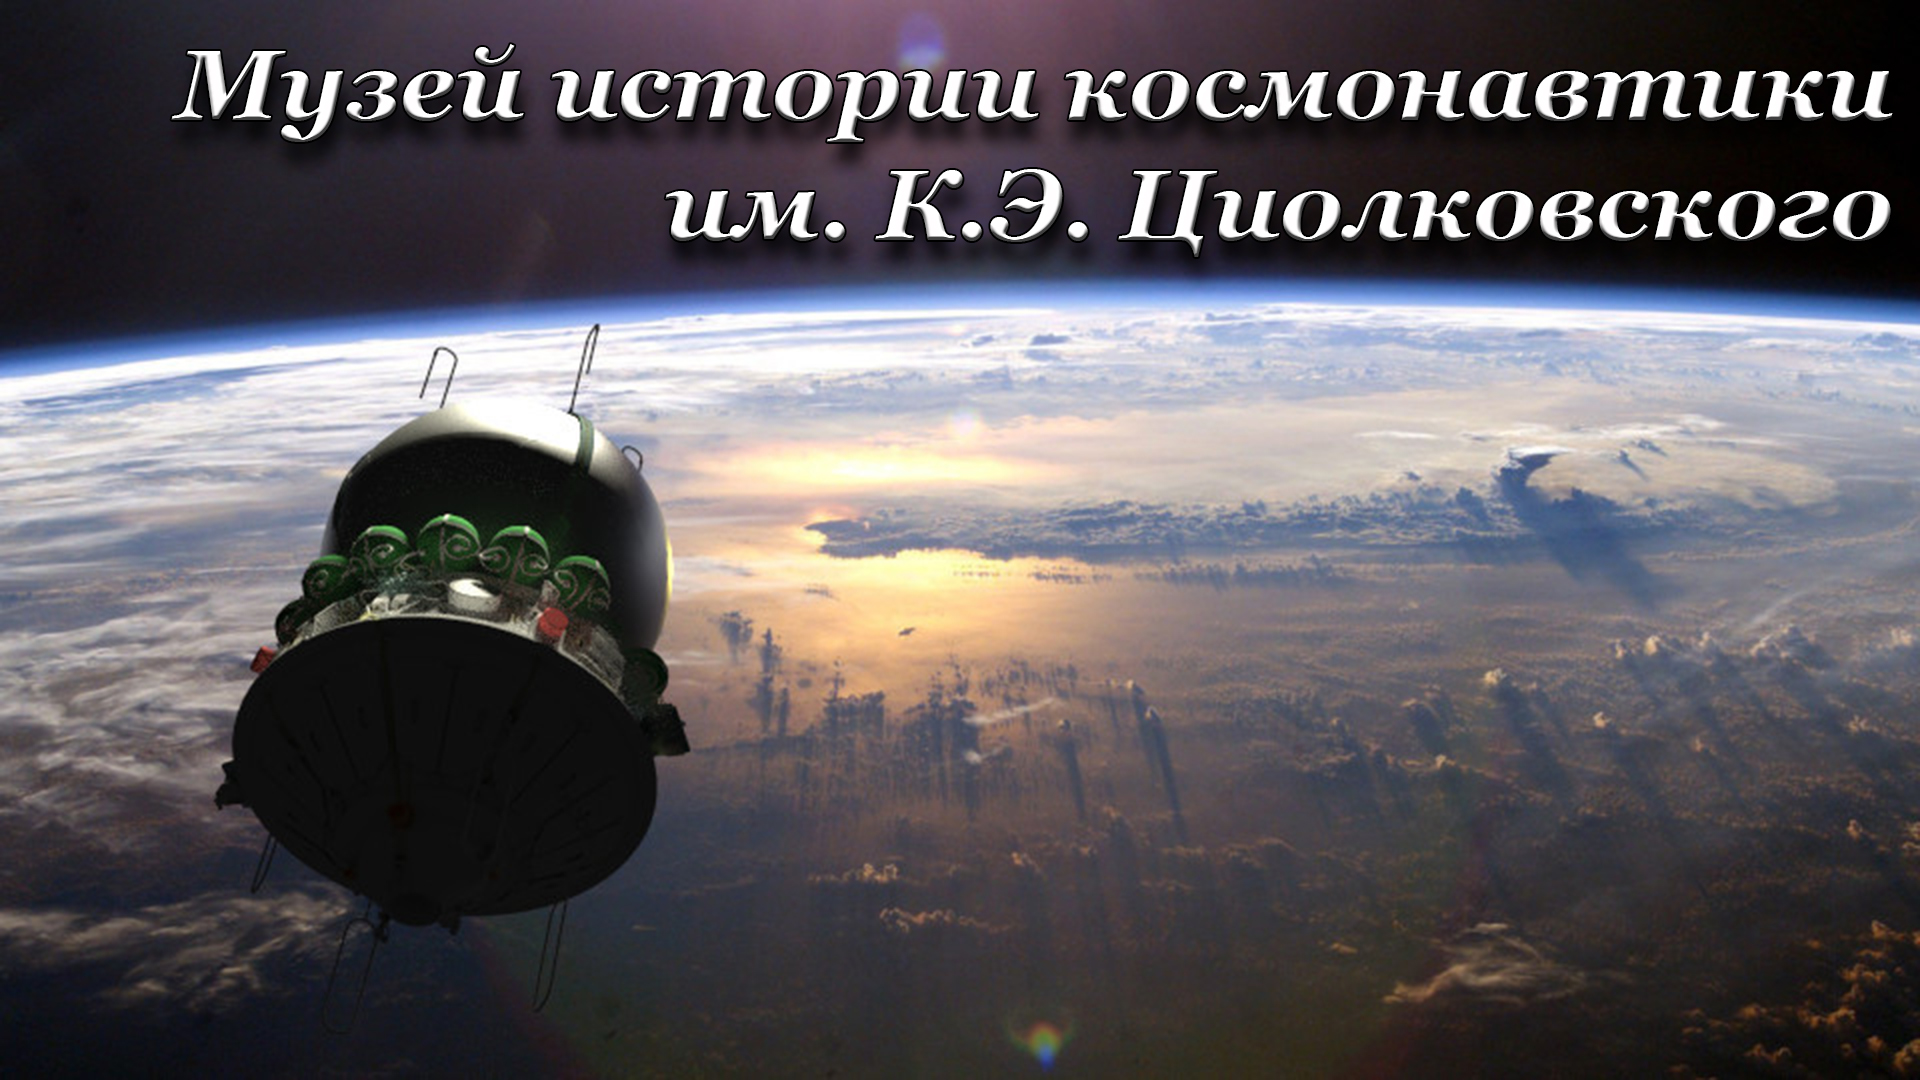 В космос полетел восток. Космический корабль Восток Юрия Гагарина. Восток-1 космический корабль Гагарин. Ракета Юрия Гагарина Восток-1. Корабль Восток 1 Гагарин.